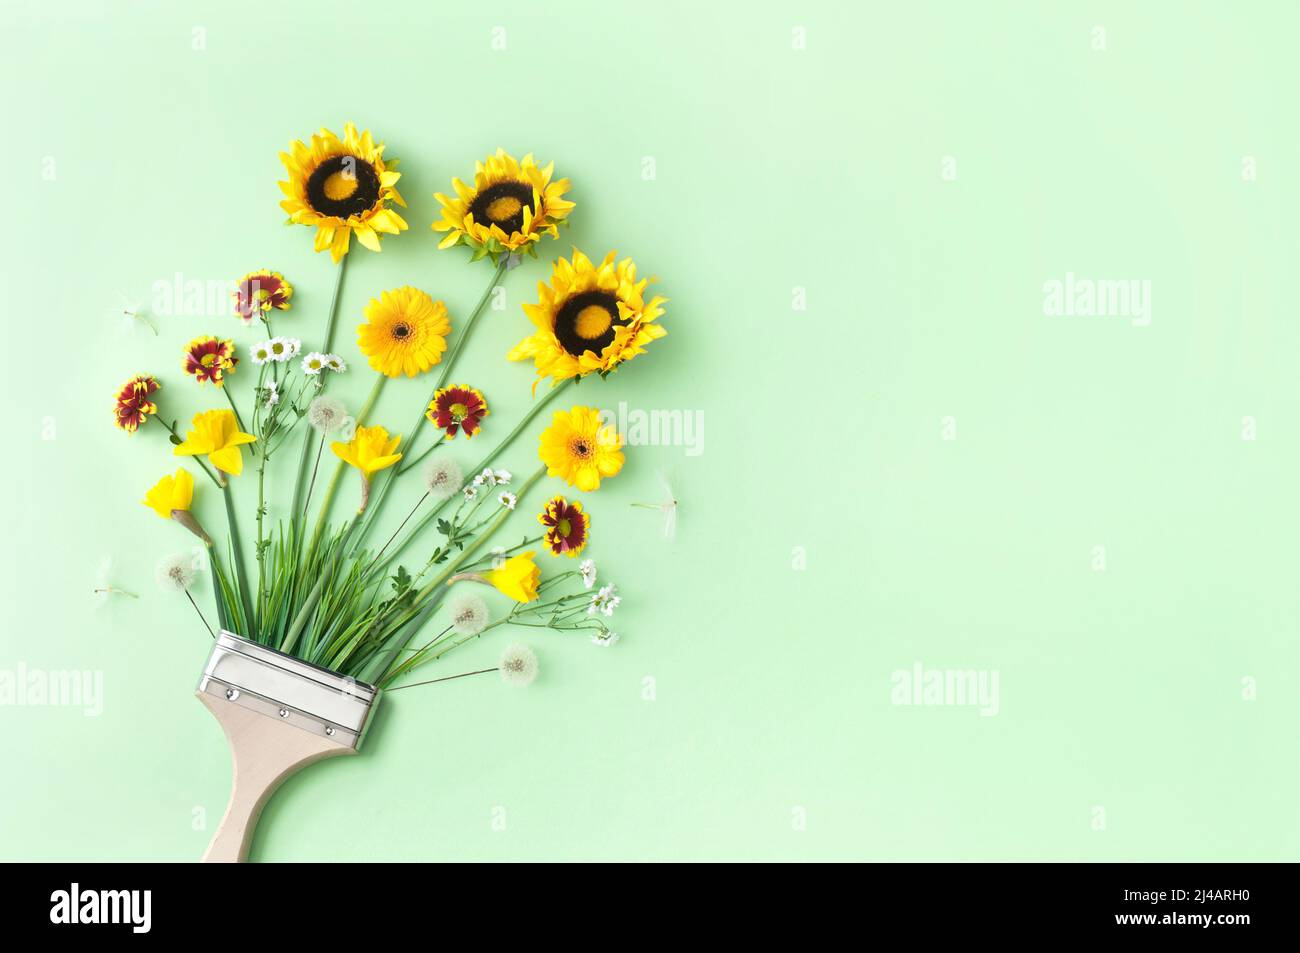 Ciclo de crecimiento de primavera a verano concepto de pincel, con dientes, margaritas y girasoles de verano Foto de stock